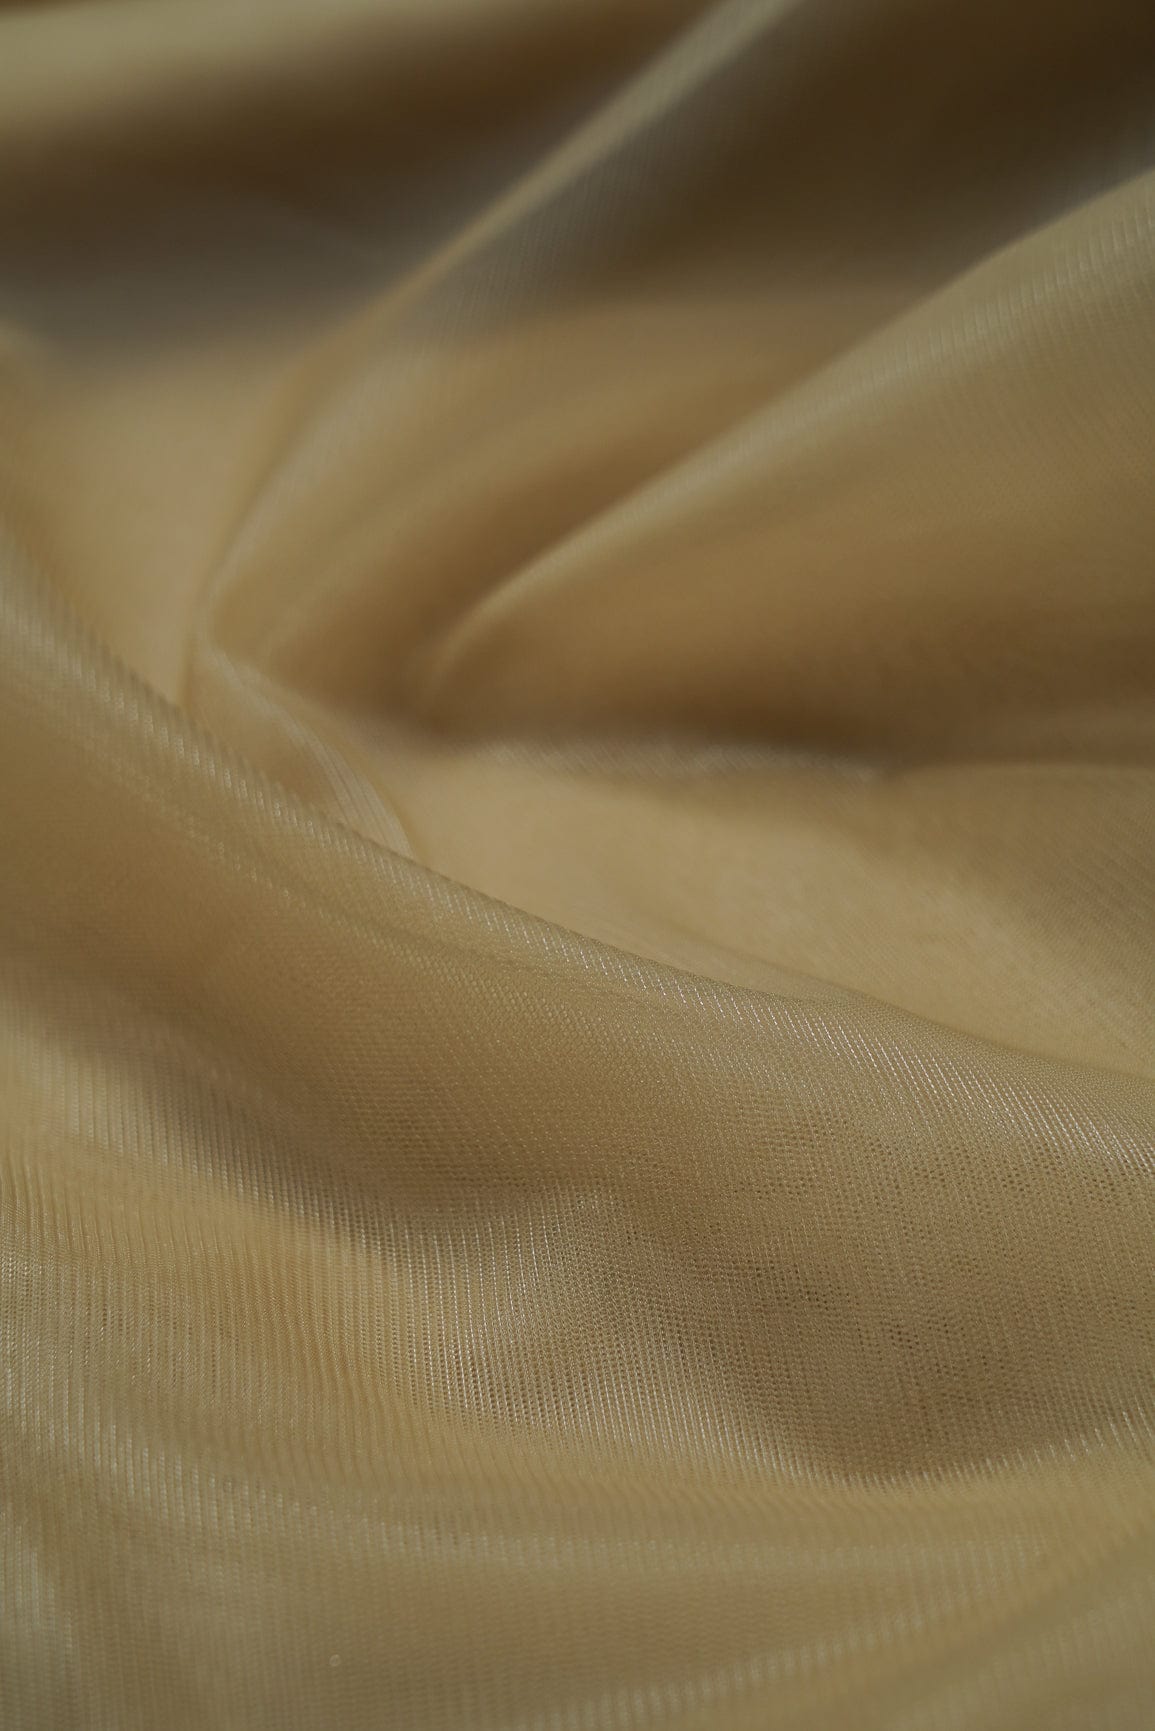 golden embroidery fabric,silk net fabric,net fabric for blouse,net fabric pricev,net fabric for dupatta,embroidered net fabric wholesale,golden embroidered net fabric